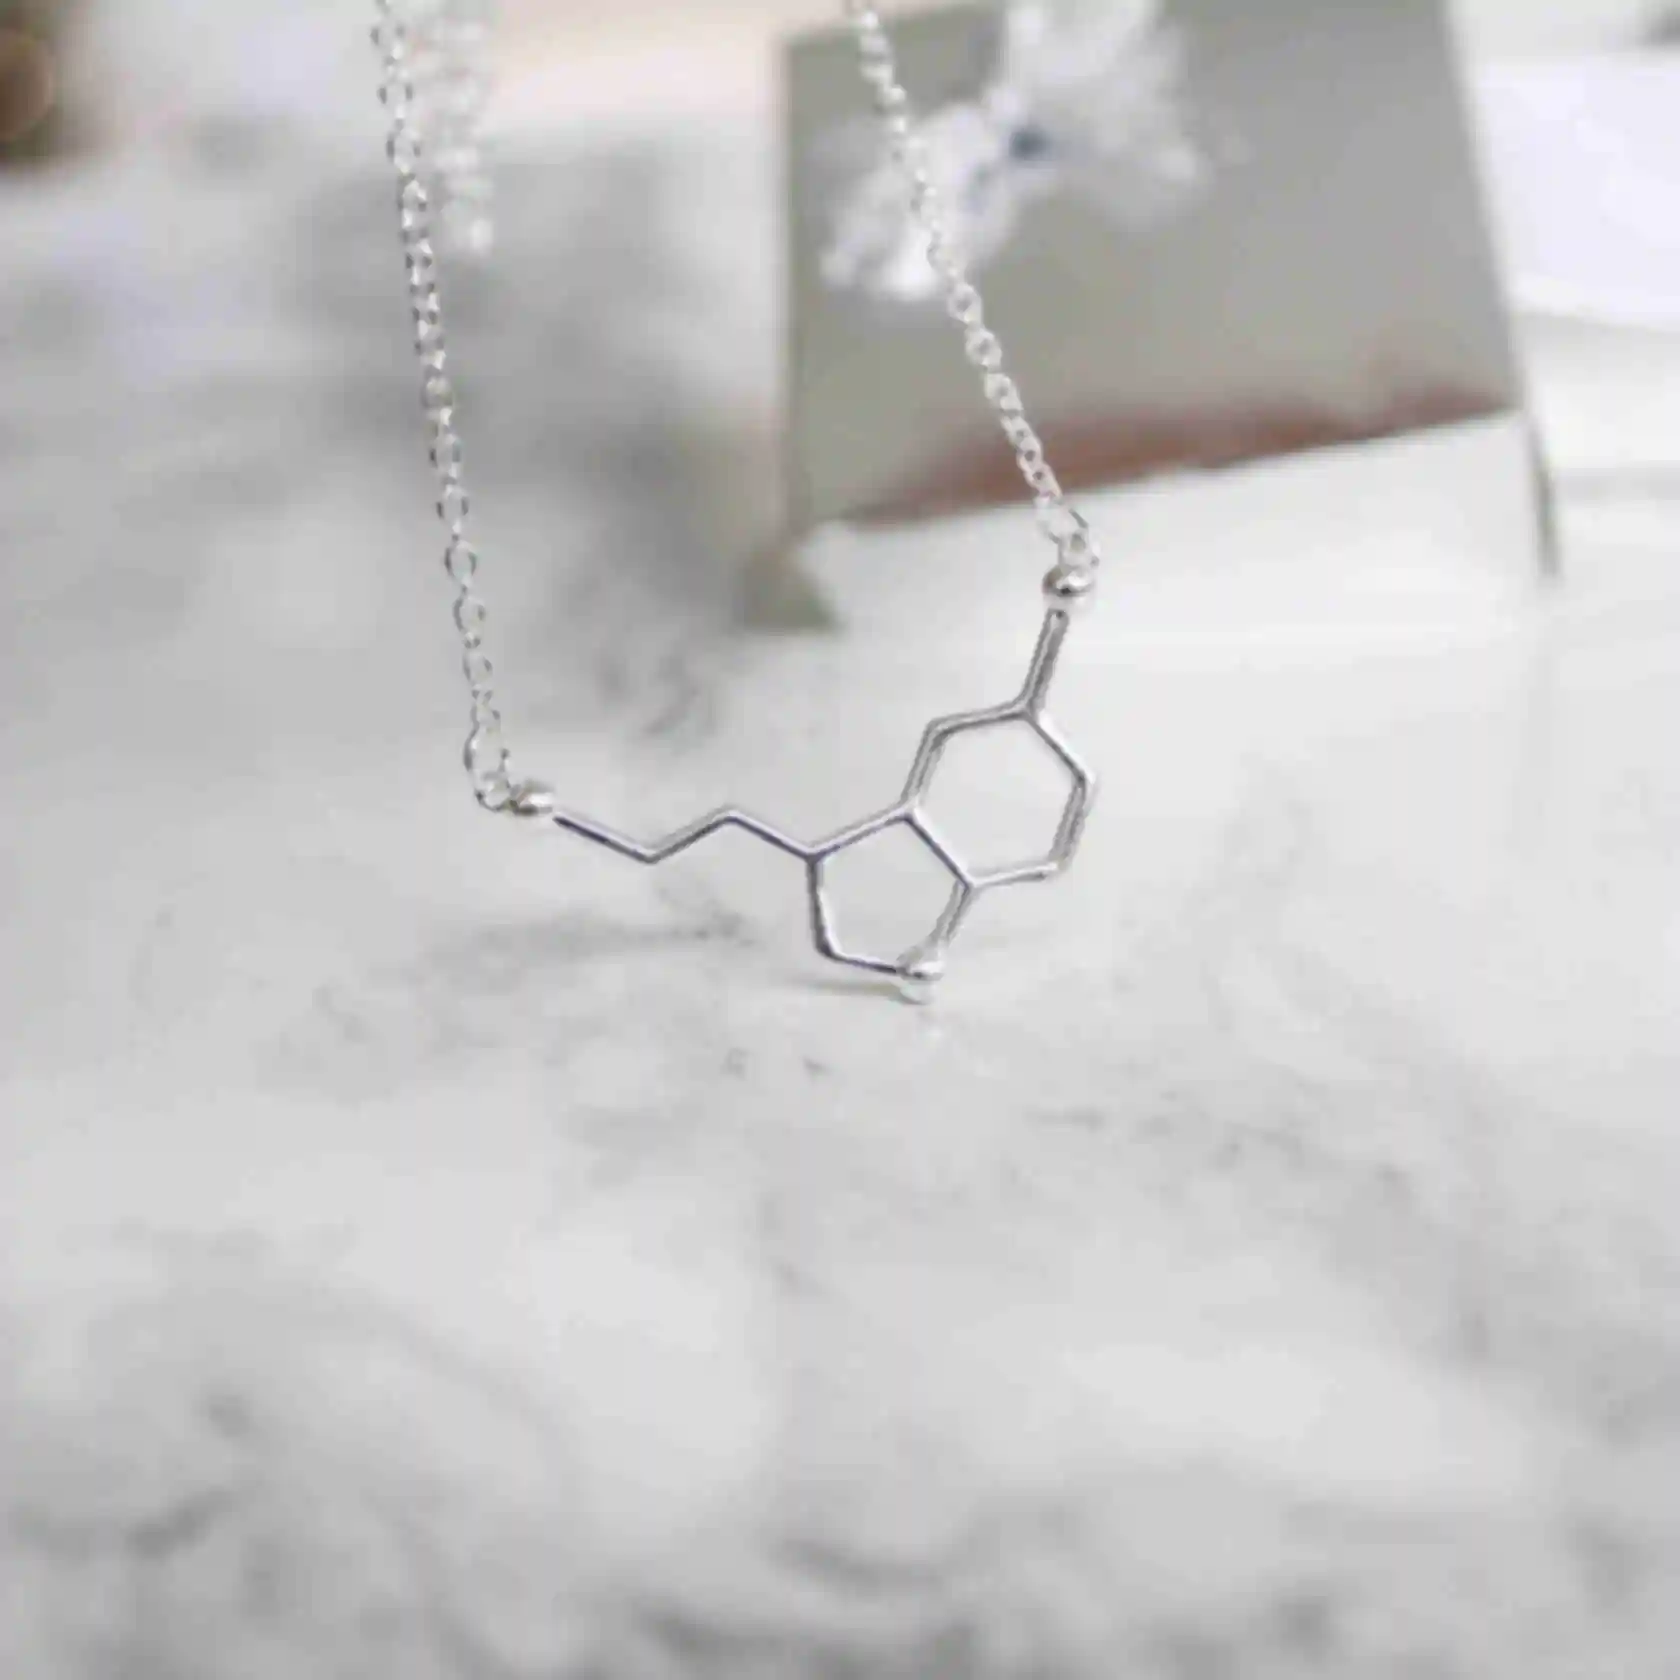 Підвіска з молекулою серотоніну ⦁ Подарунок дівчині, подрузі, колезі